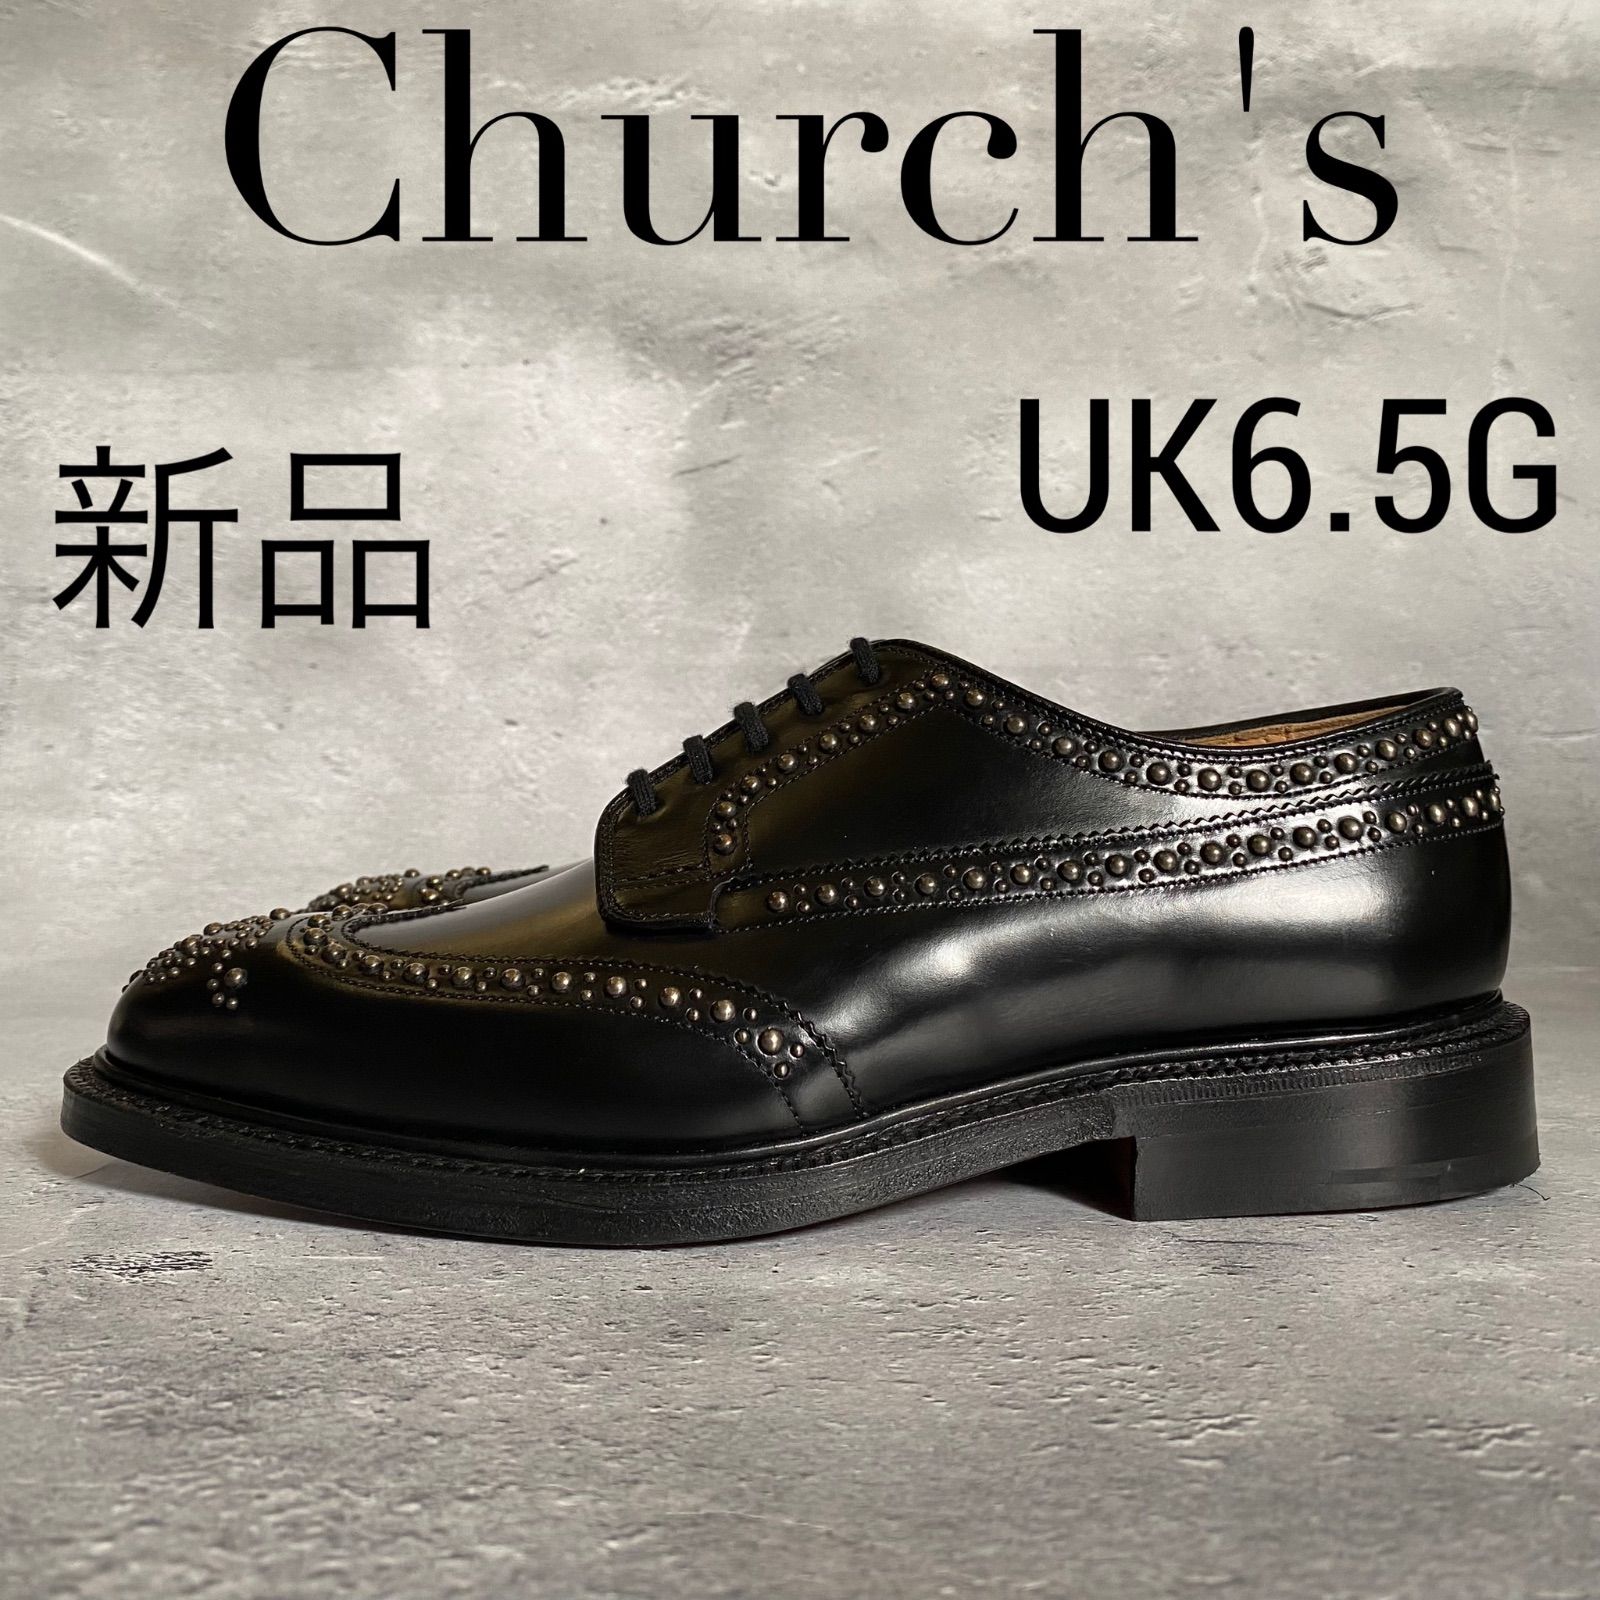 新品Chu新品 Church's グラフトン ダービーブローグシューズ スタッズ 革靴